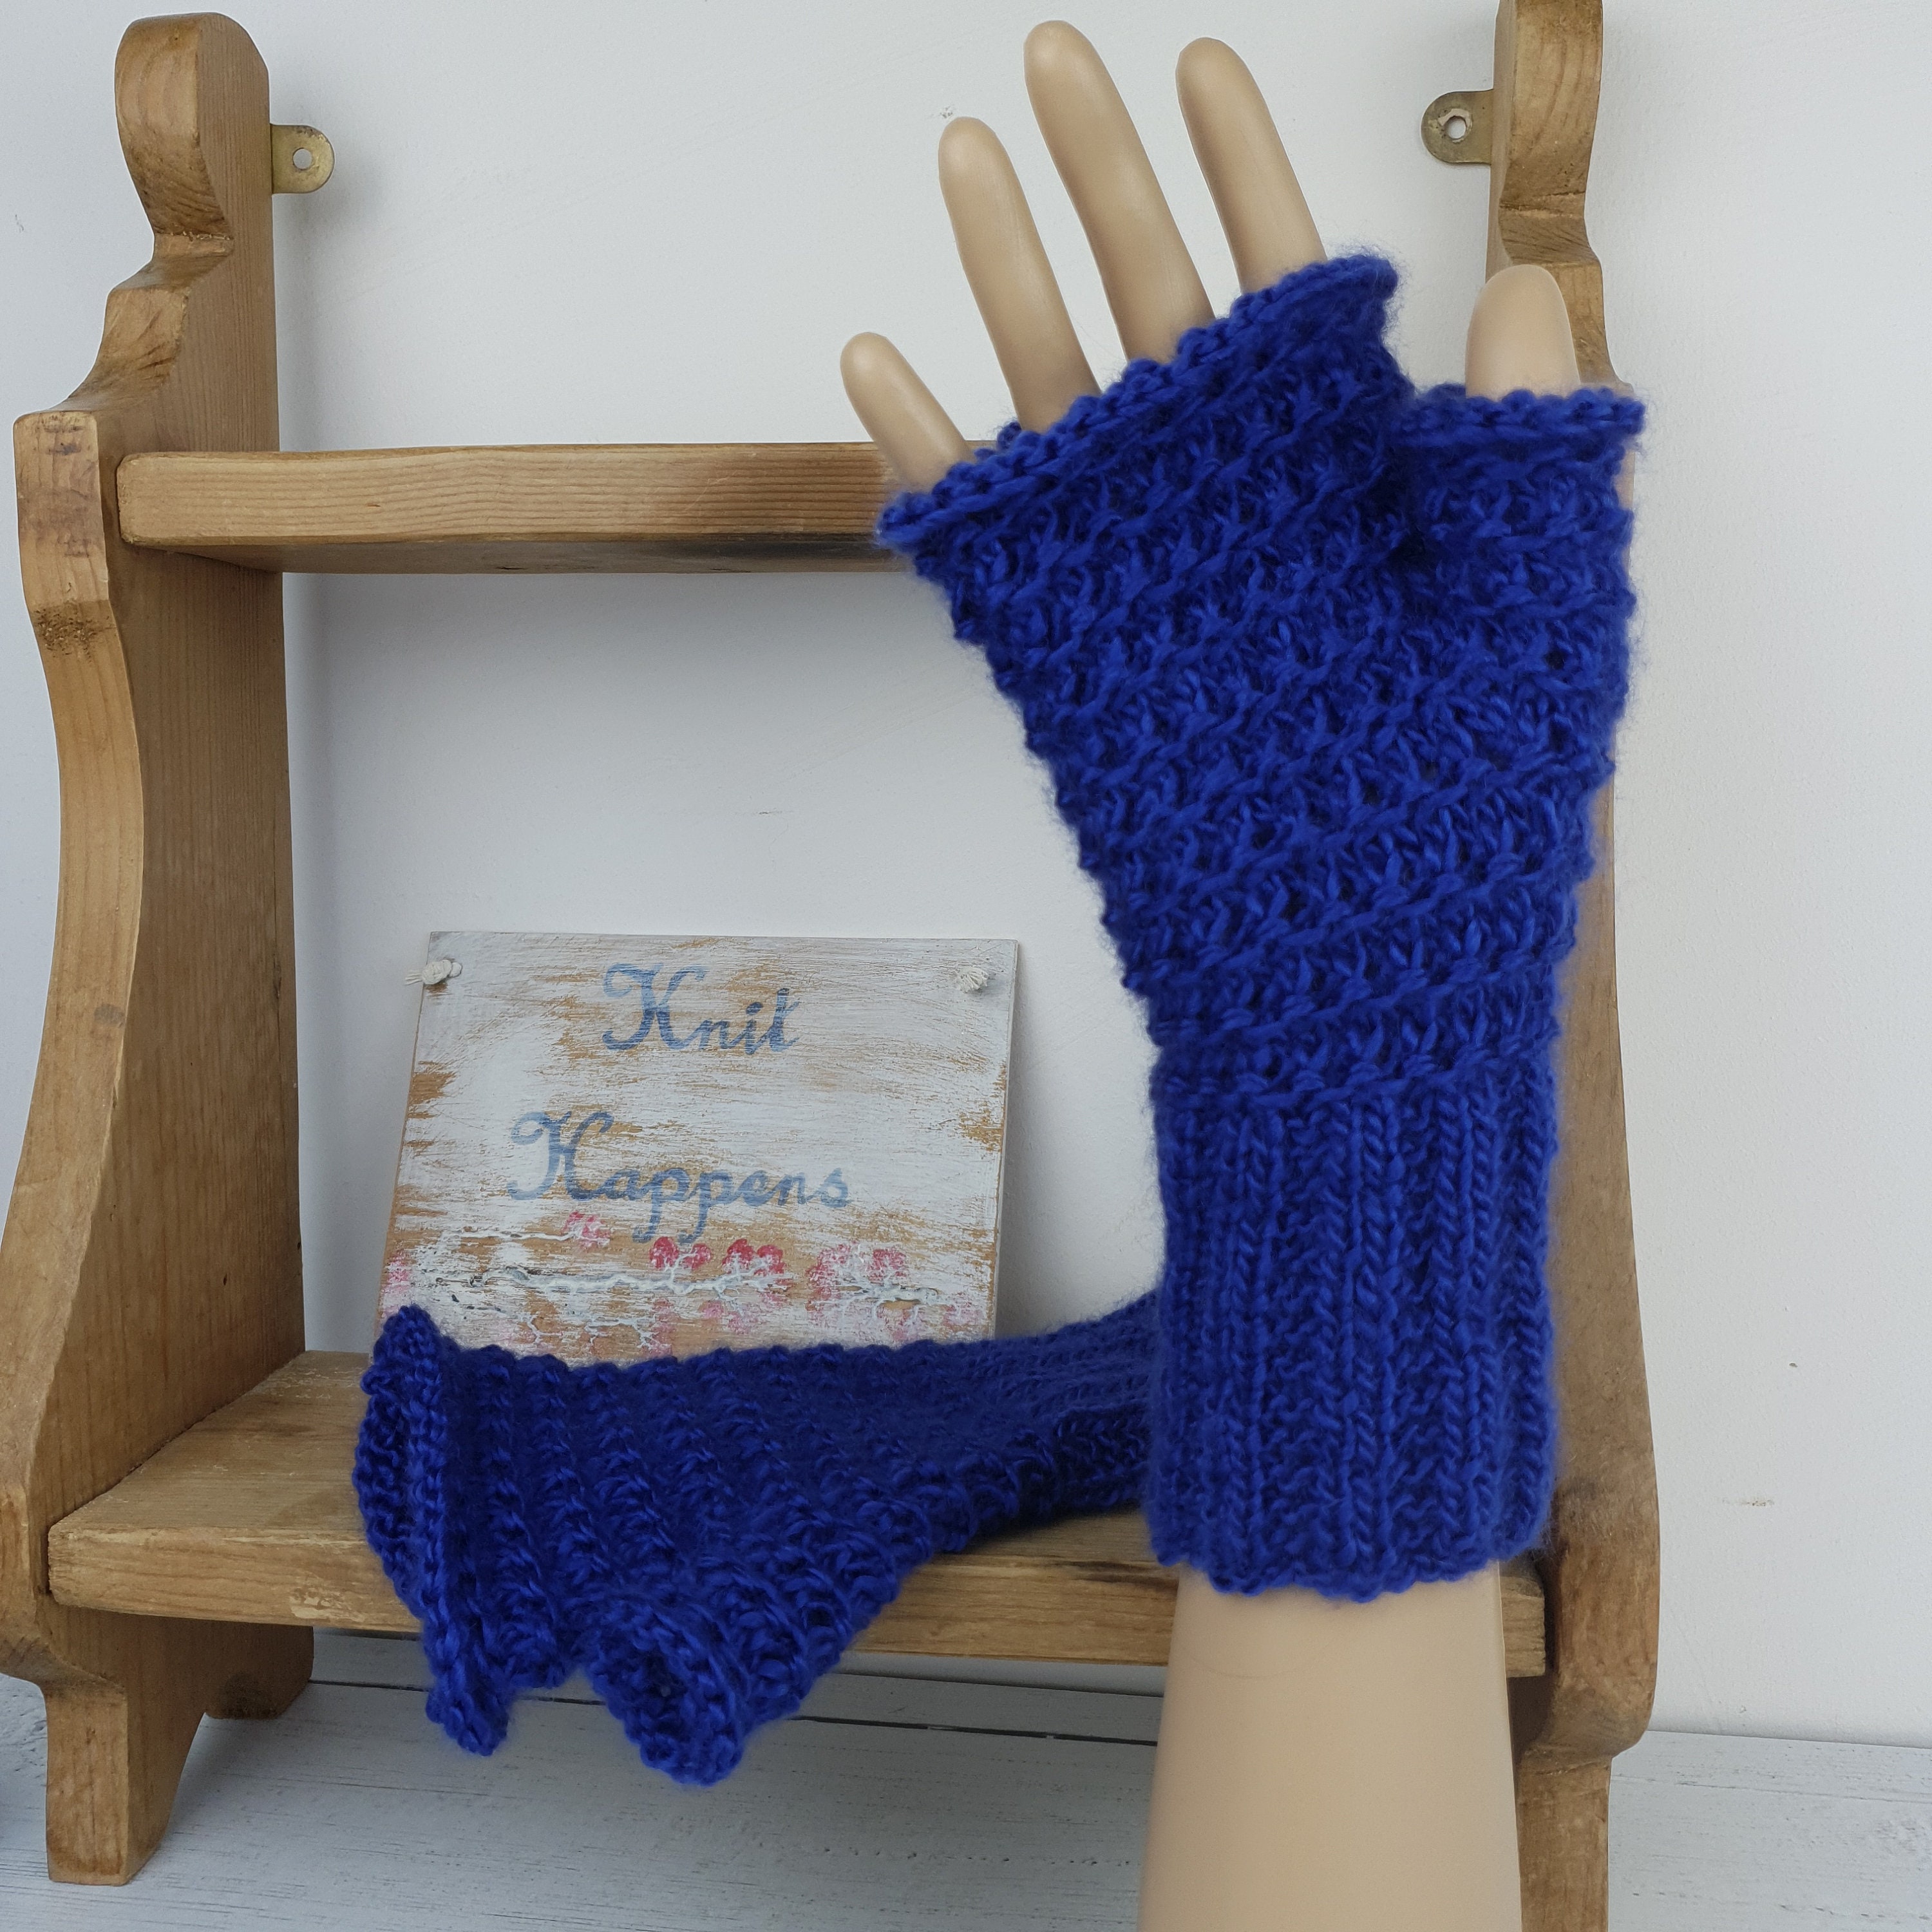 Bernat Knit Fingerless Gloves Pattern